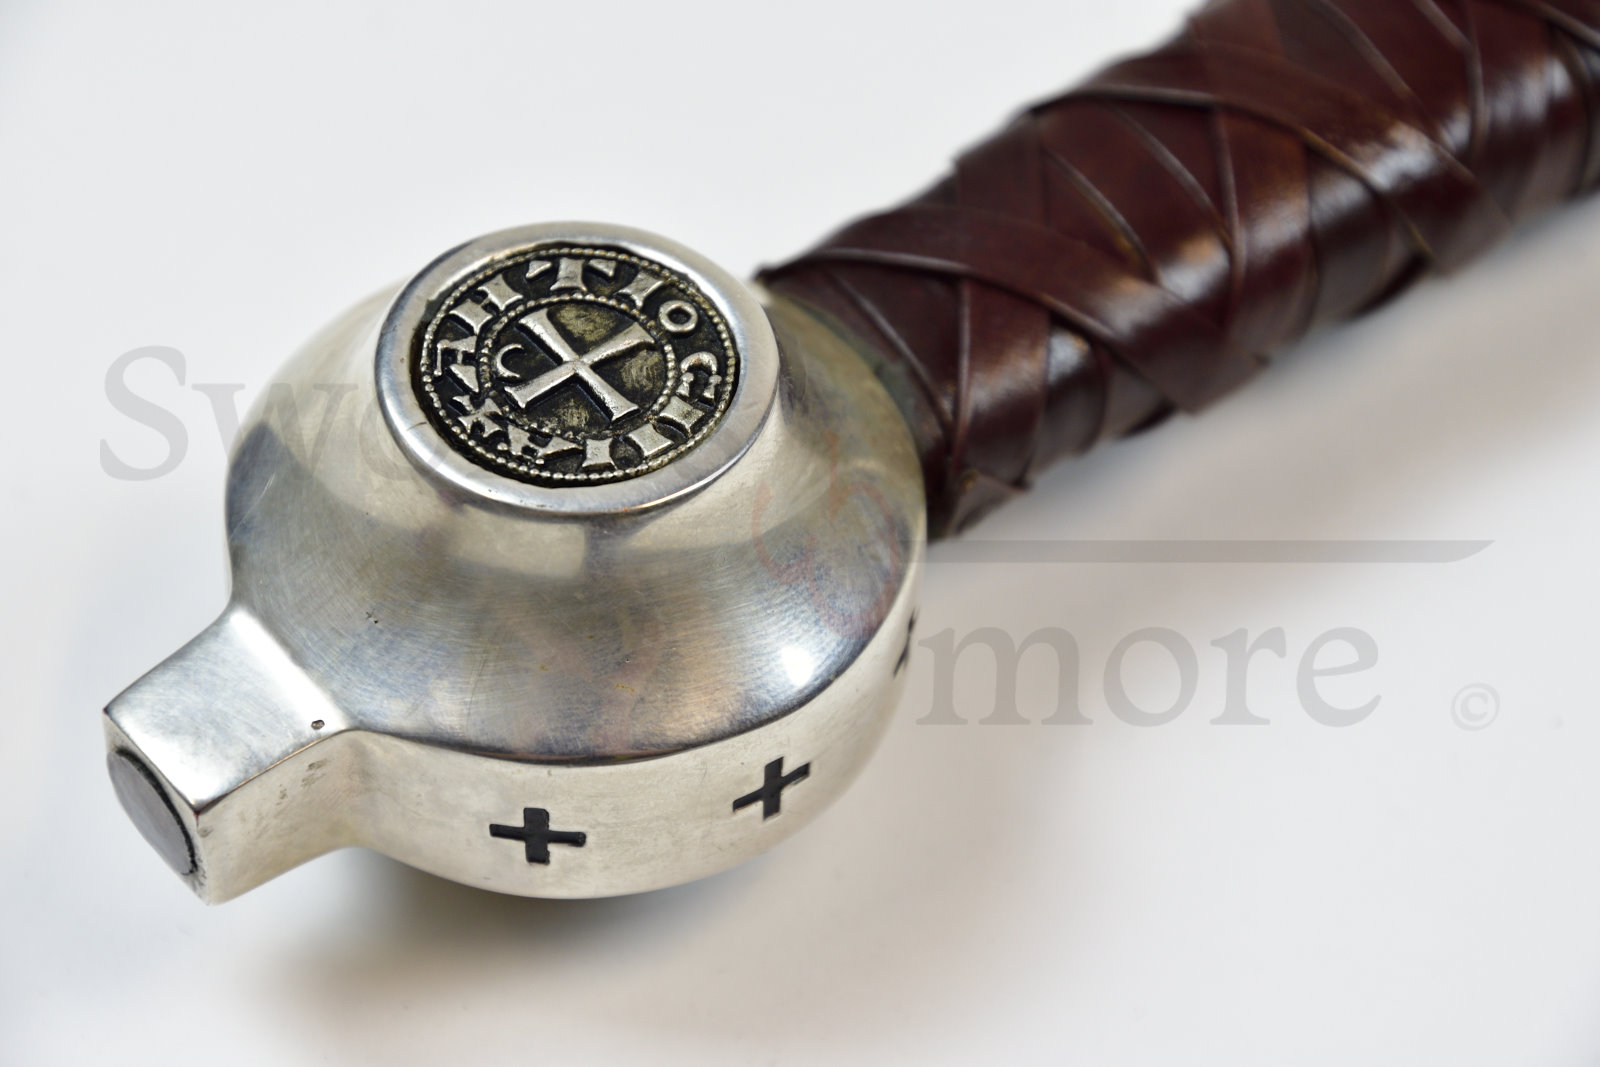 Faithkeeper – Sword of The Knights Templar